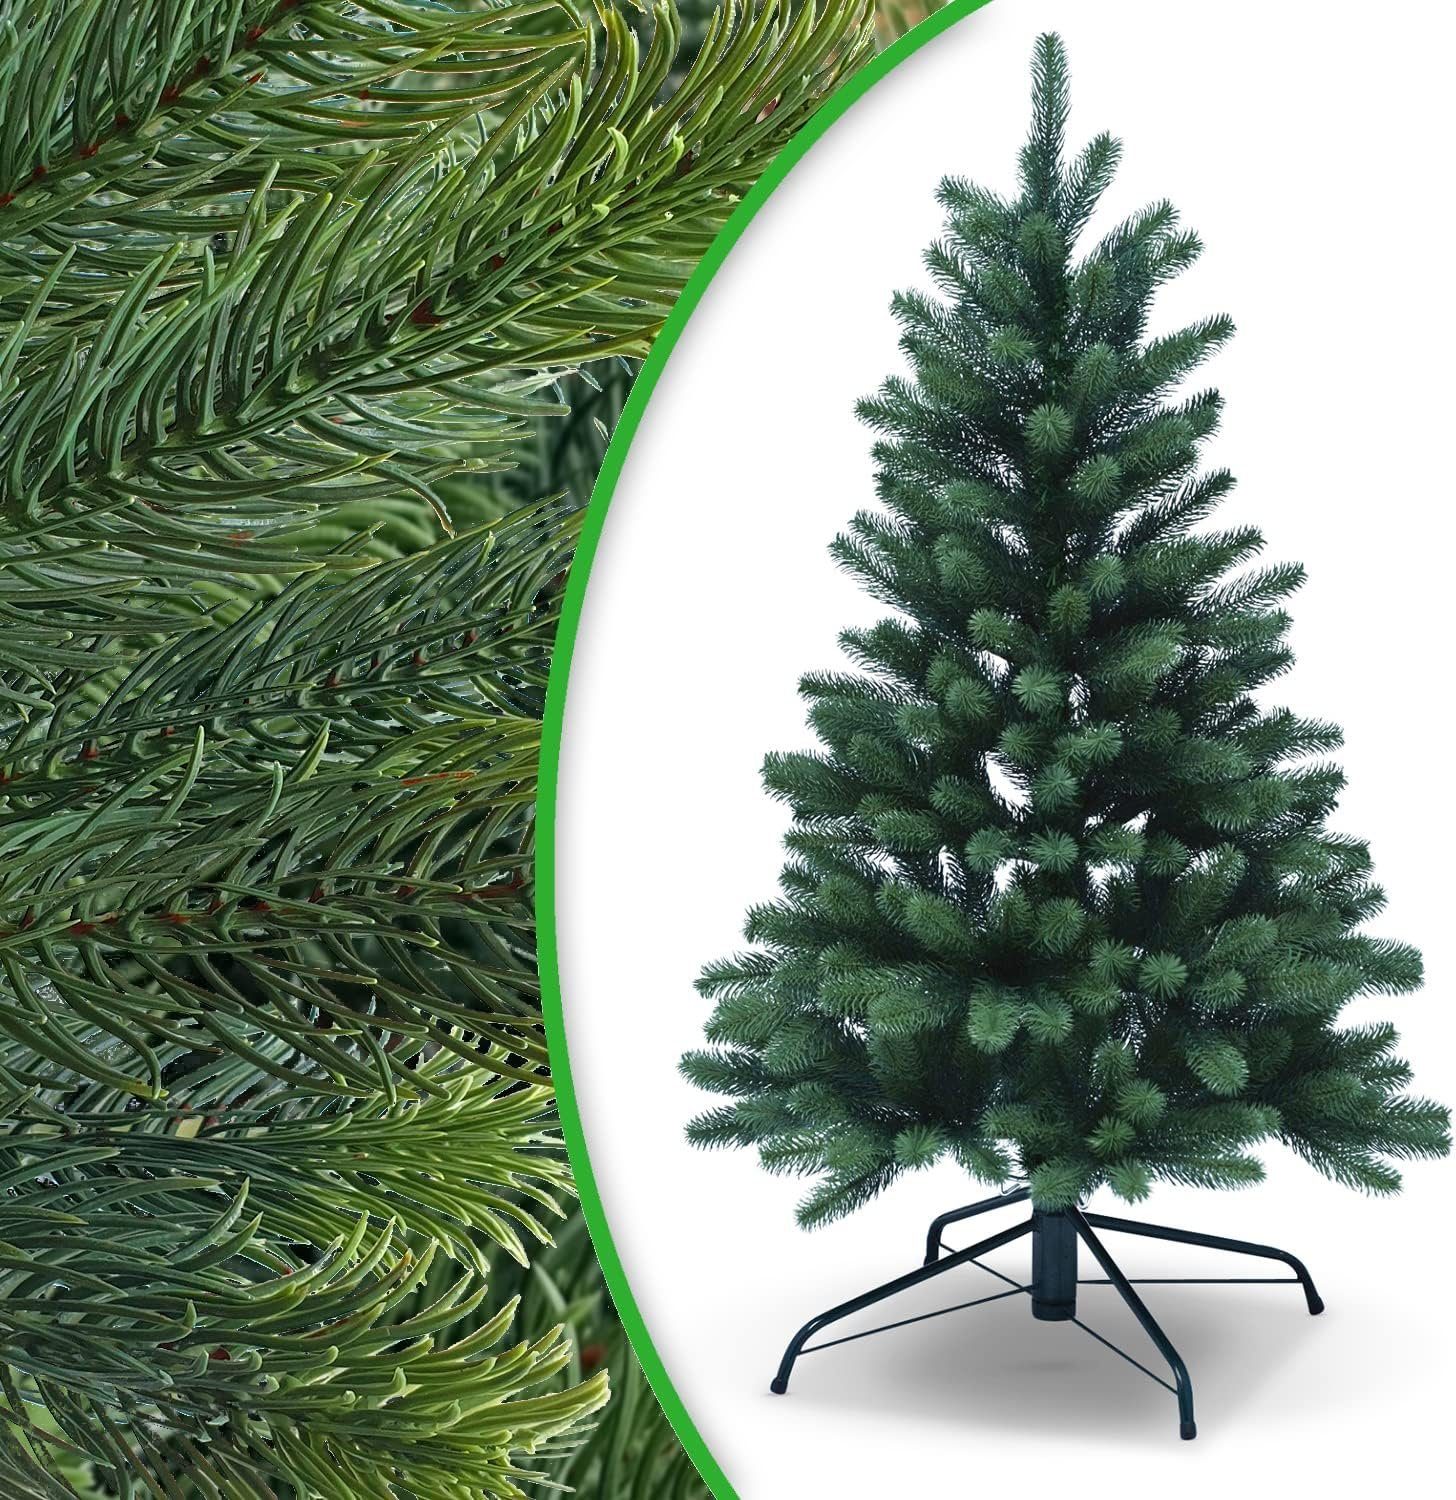 DILUMA Künstlicher Weihnachtsbaum Spritzguss Weihnachtsbaum Künstlich wie echt Tannenbaum Christbaum | Künstliche Weihnachtsbäume